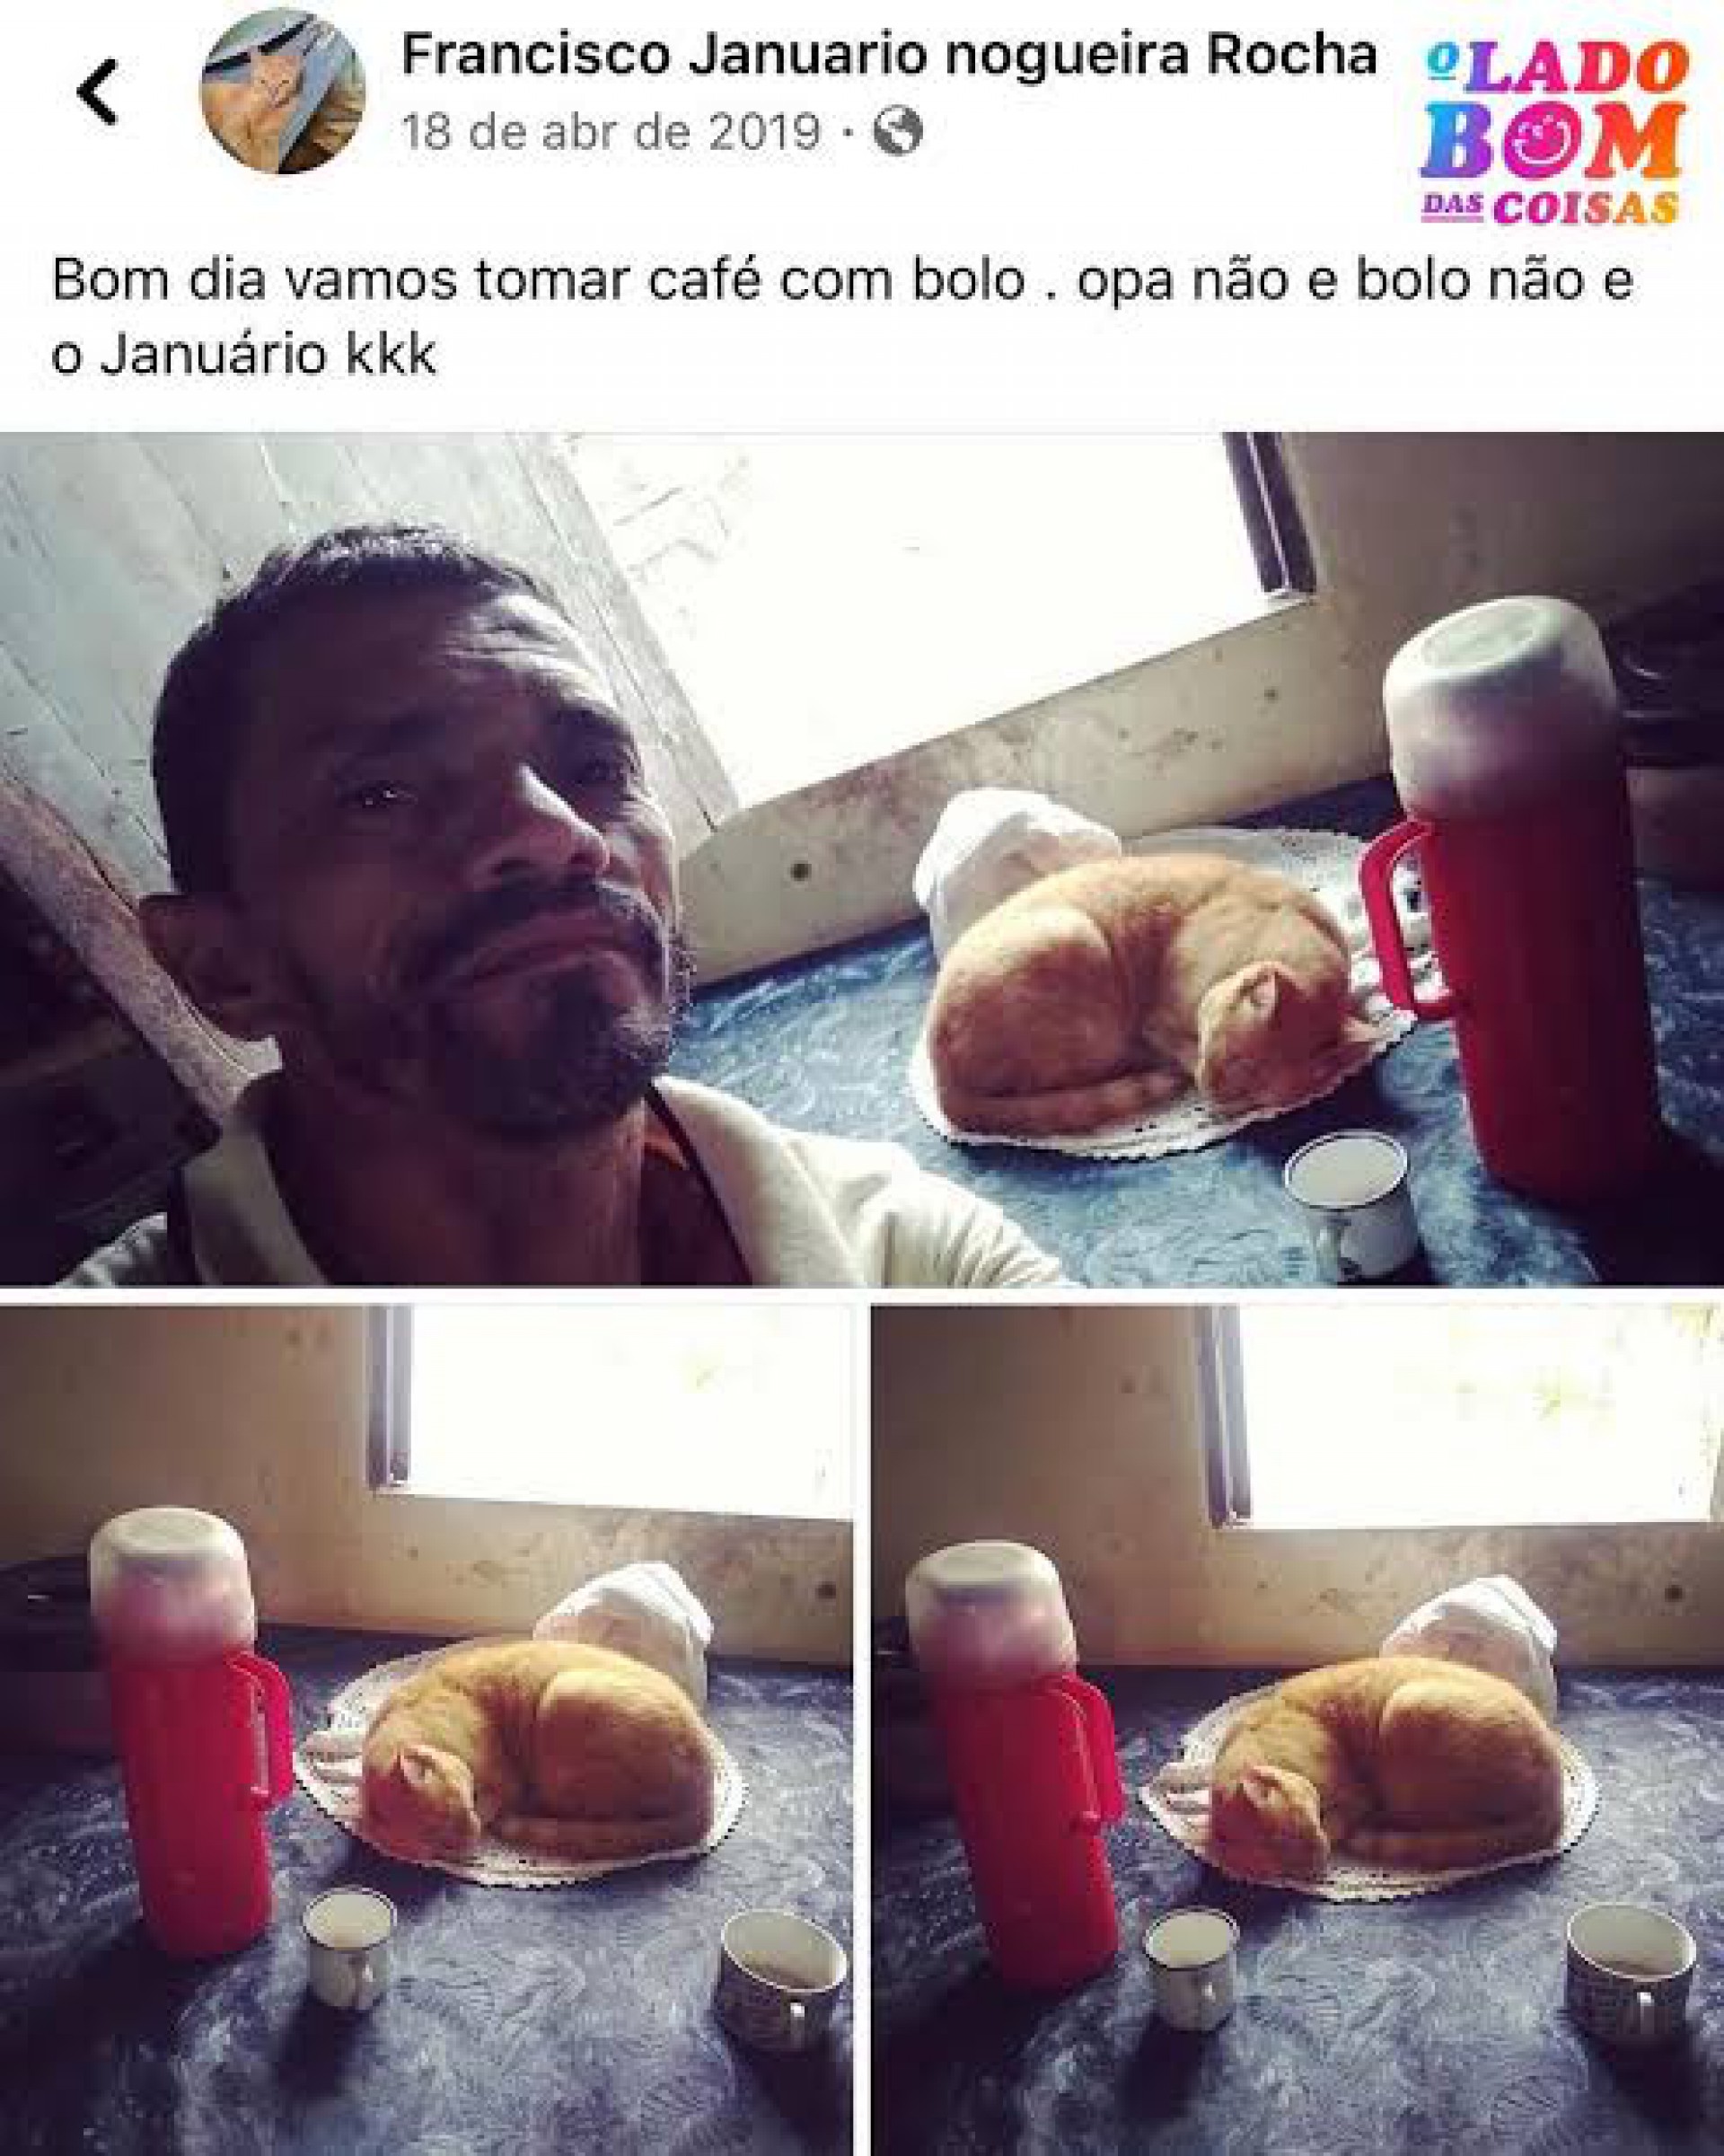 Januário ficou famoso em abril de 2019, quando Carlos publicou uma imagem da mesa de café da manhã, com o gatinho dormindo em cima da toalha onde deveria estar um bolo